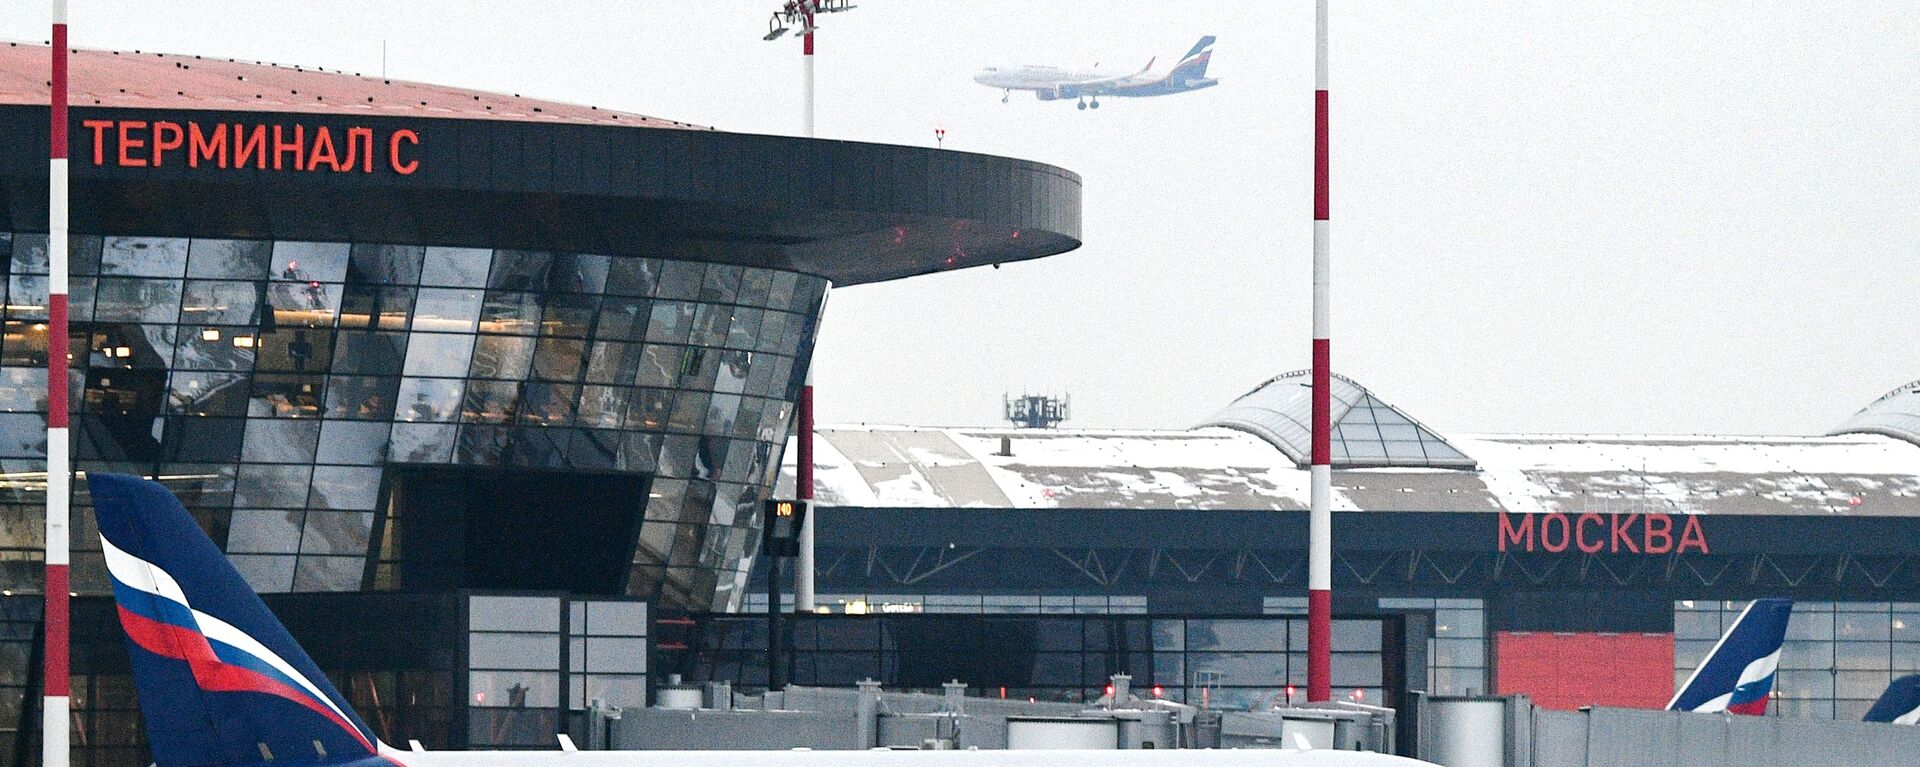 مطار شيريمتيفو، الطيران الروسي آيروفلوت، موسكو، روسيا مارس 2021 - سبوتنيك عربي, 1920, 28.06.2022